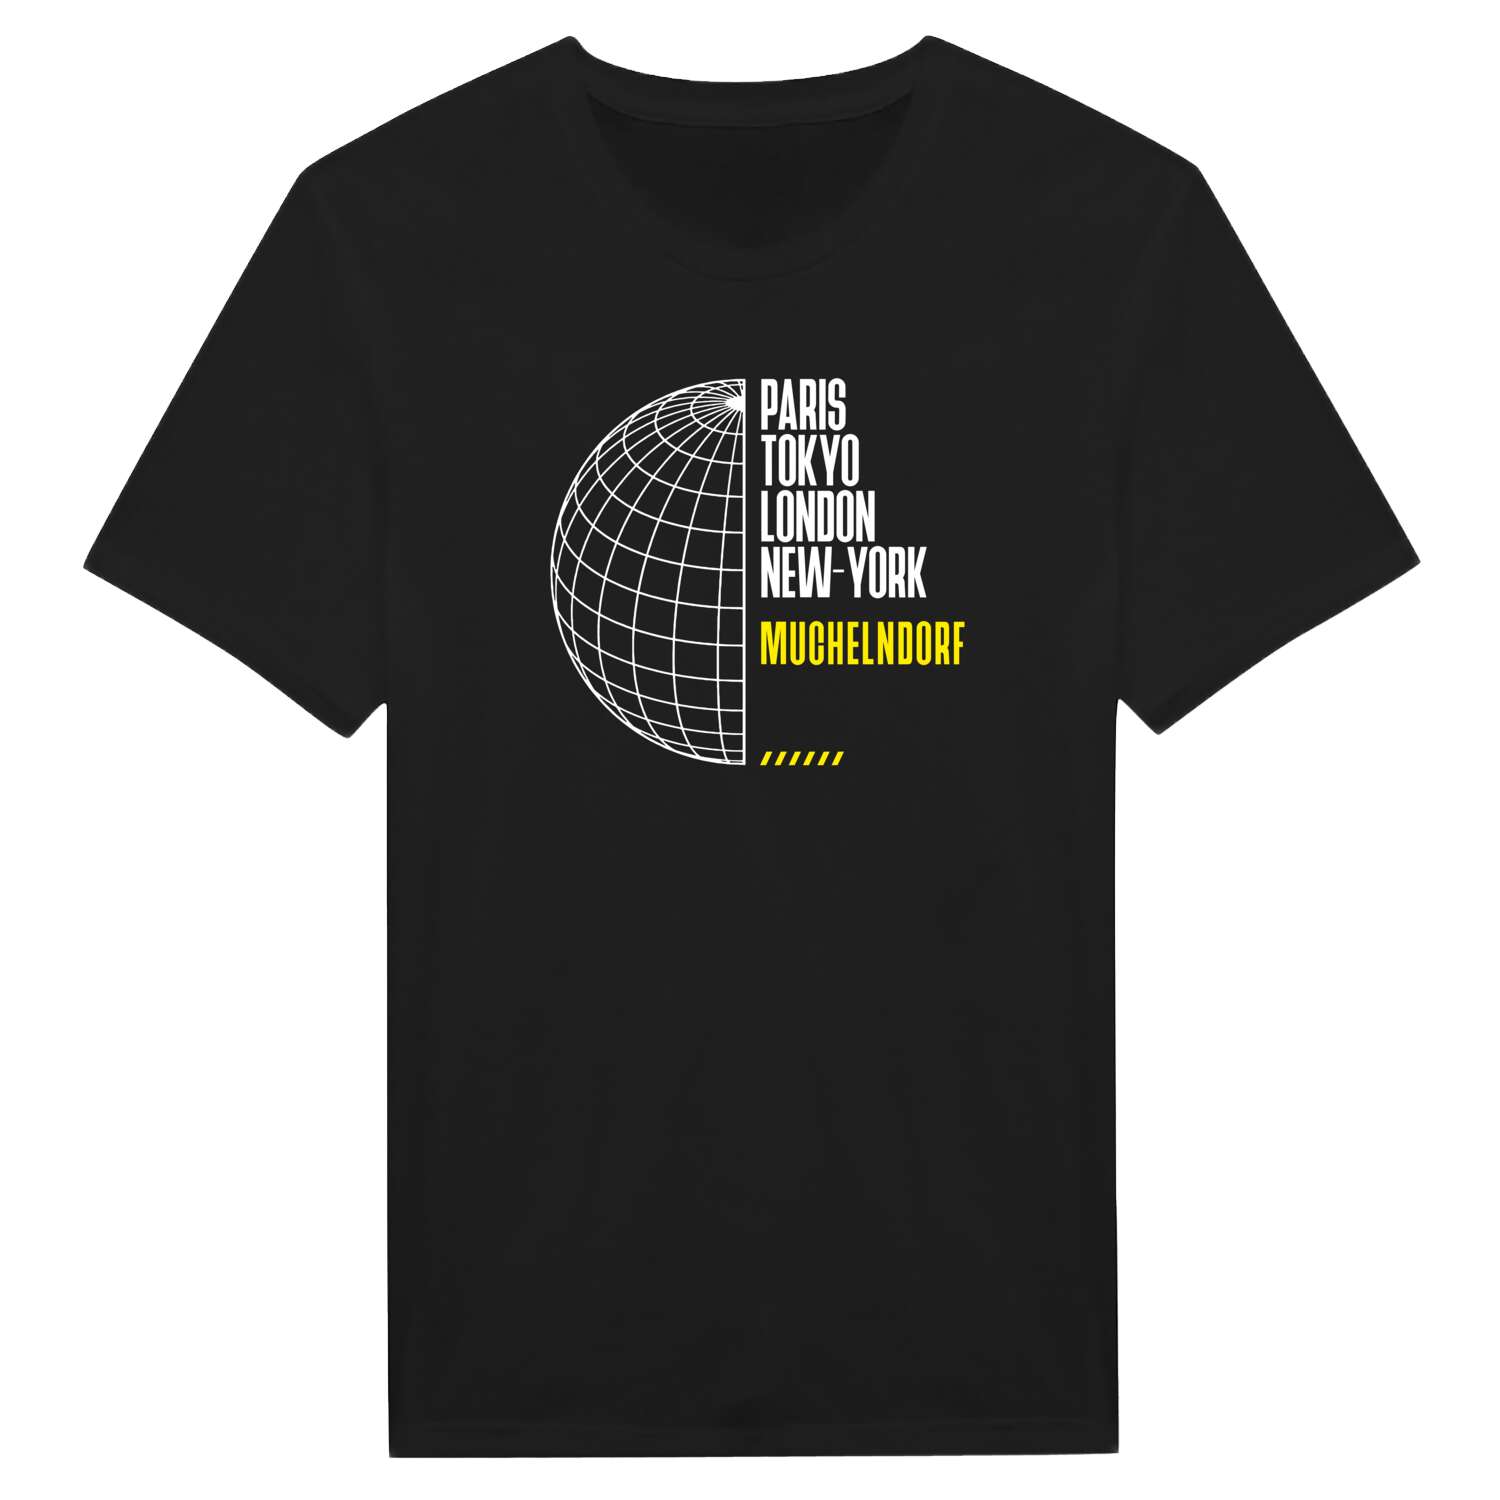 Muchelndorf T-Shirt »Paris Tokyo London«